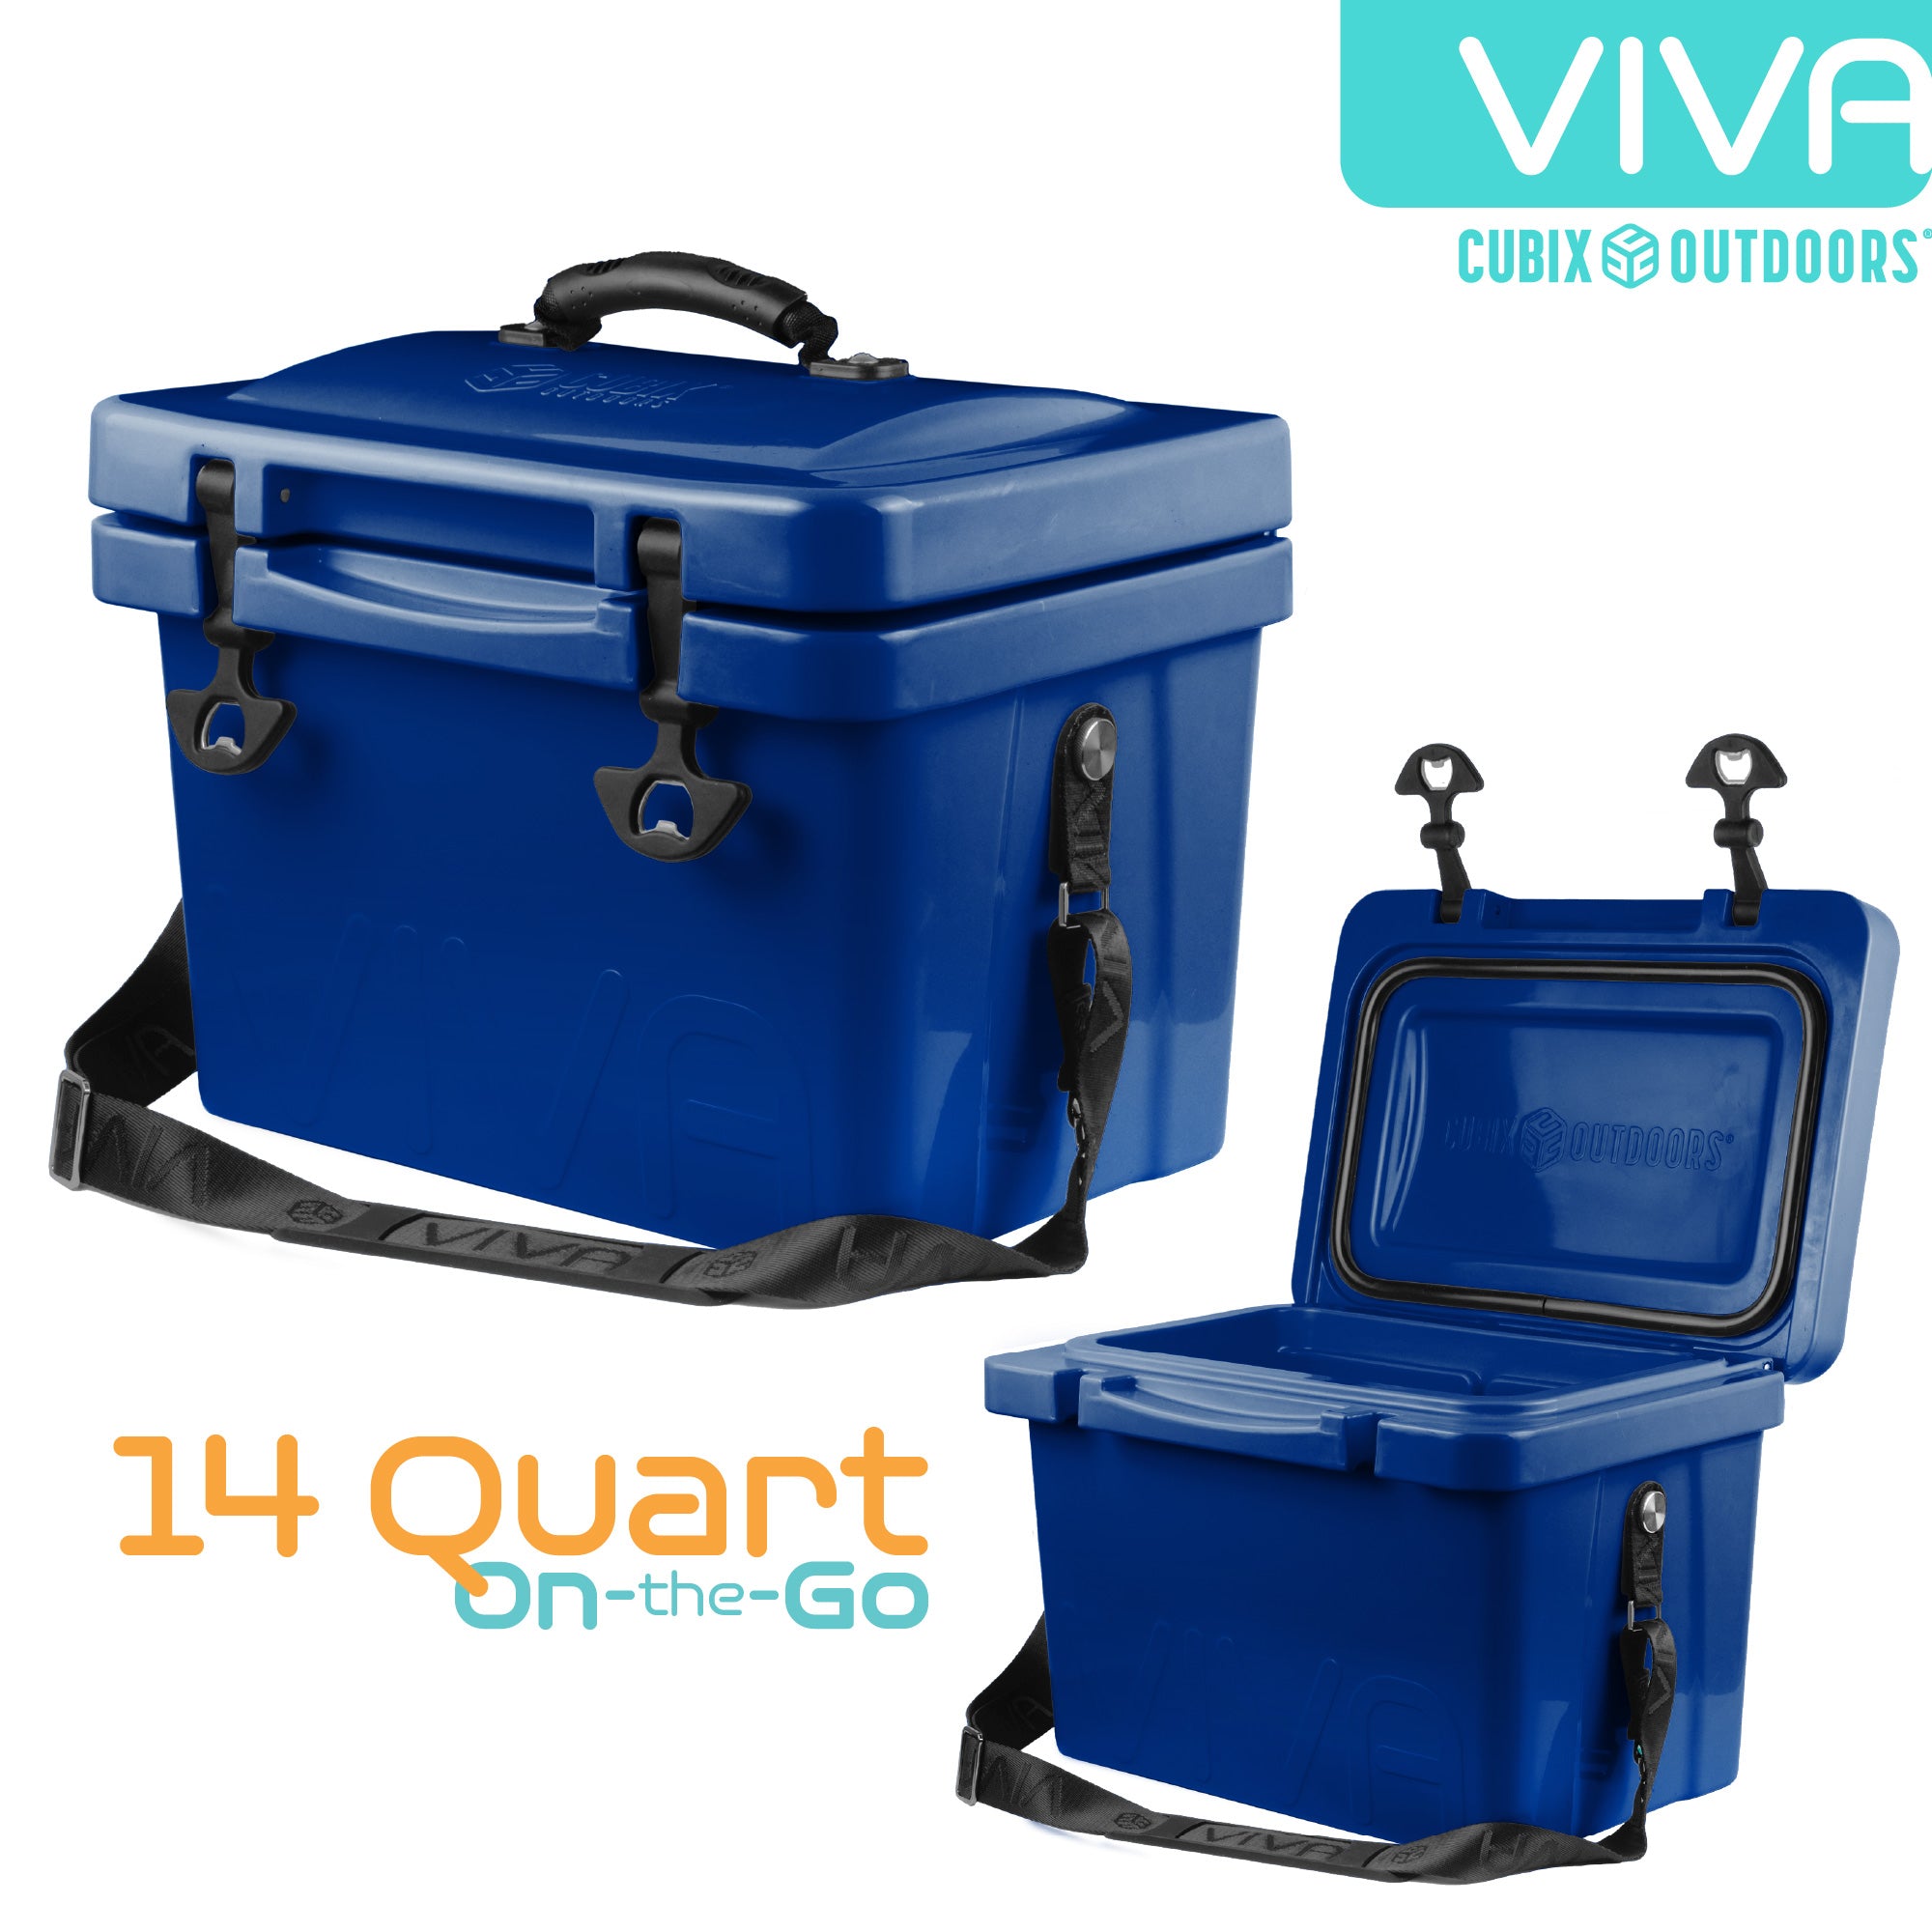 Cubix Outdoors 10 qt Quadrax Rotomolded Portable Hard Cooler, Fits 8 Cans, Abyss Blue, Size: 10 Quarts